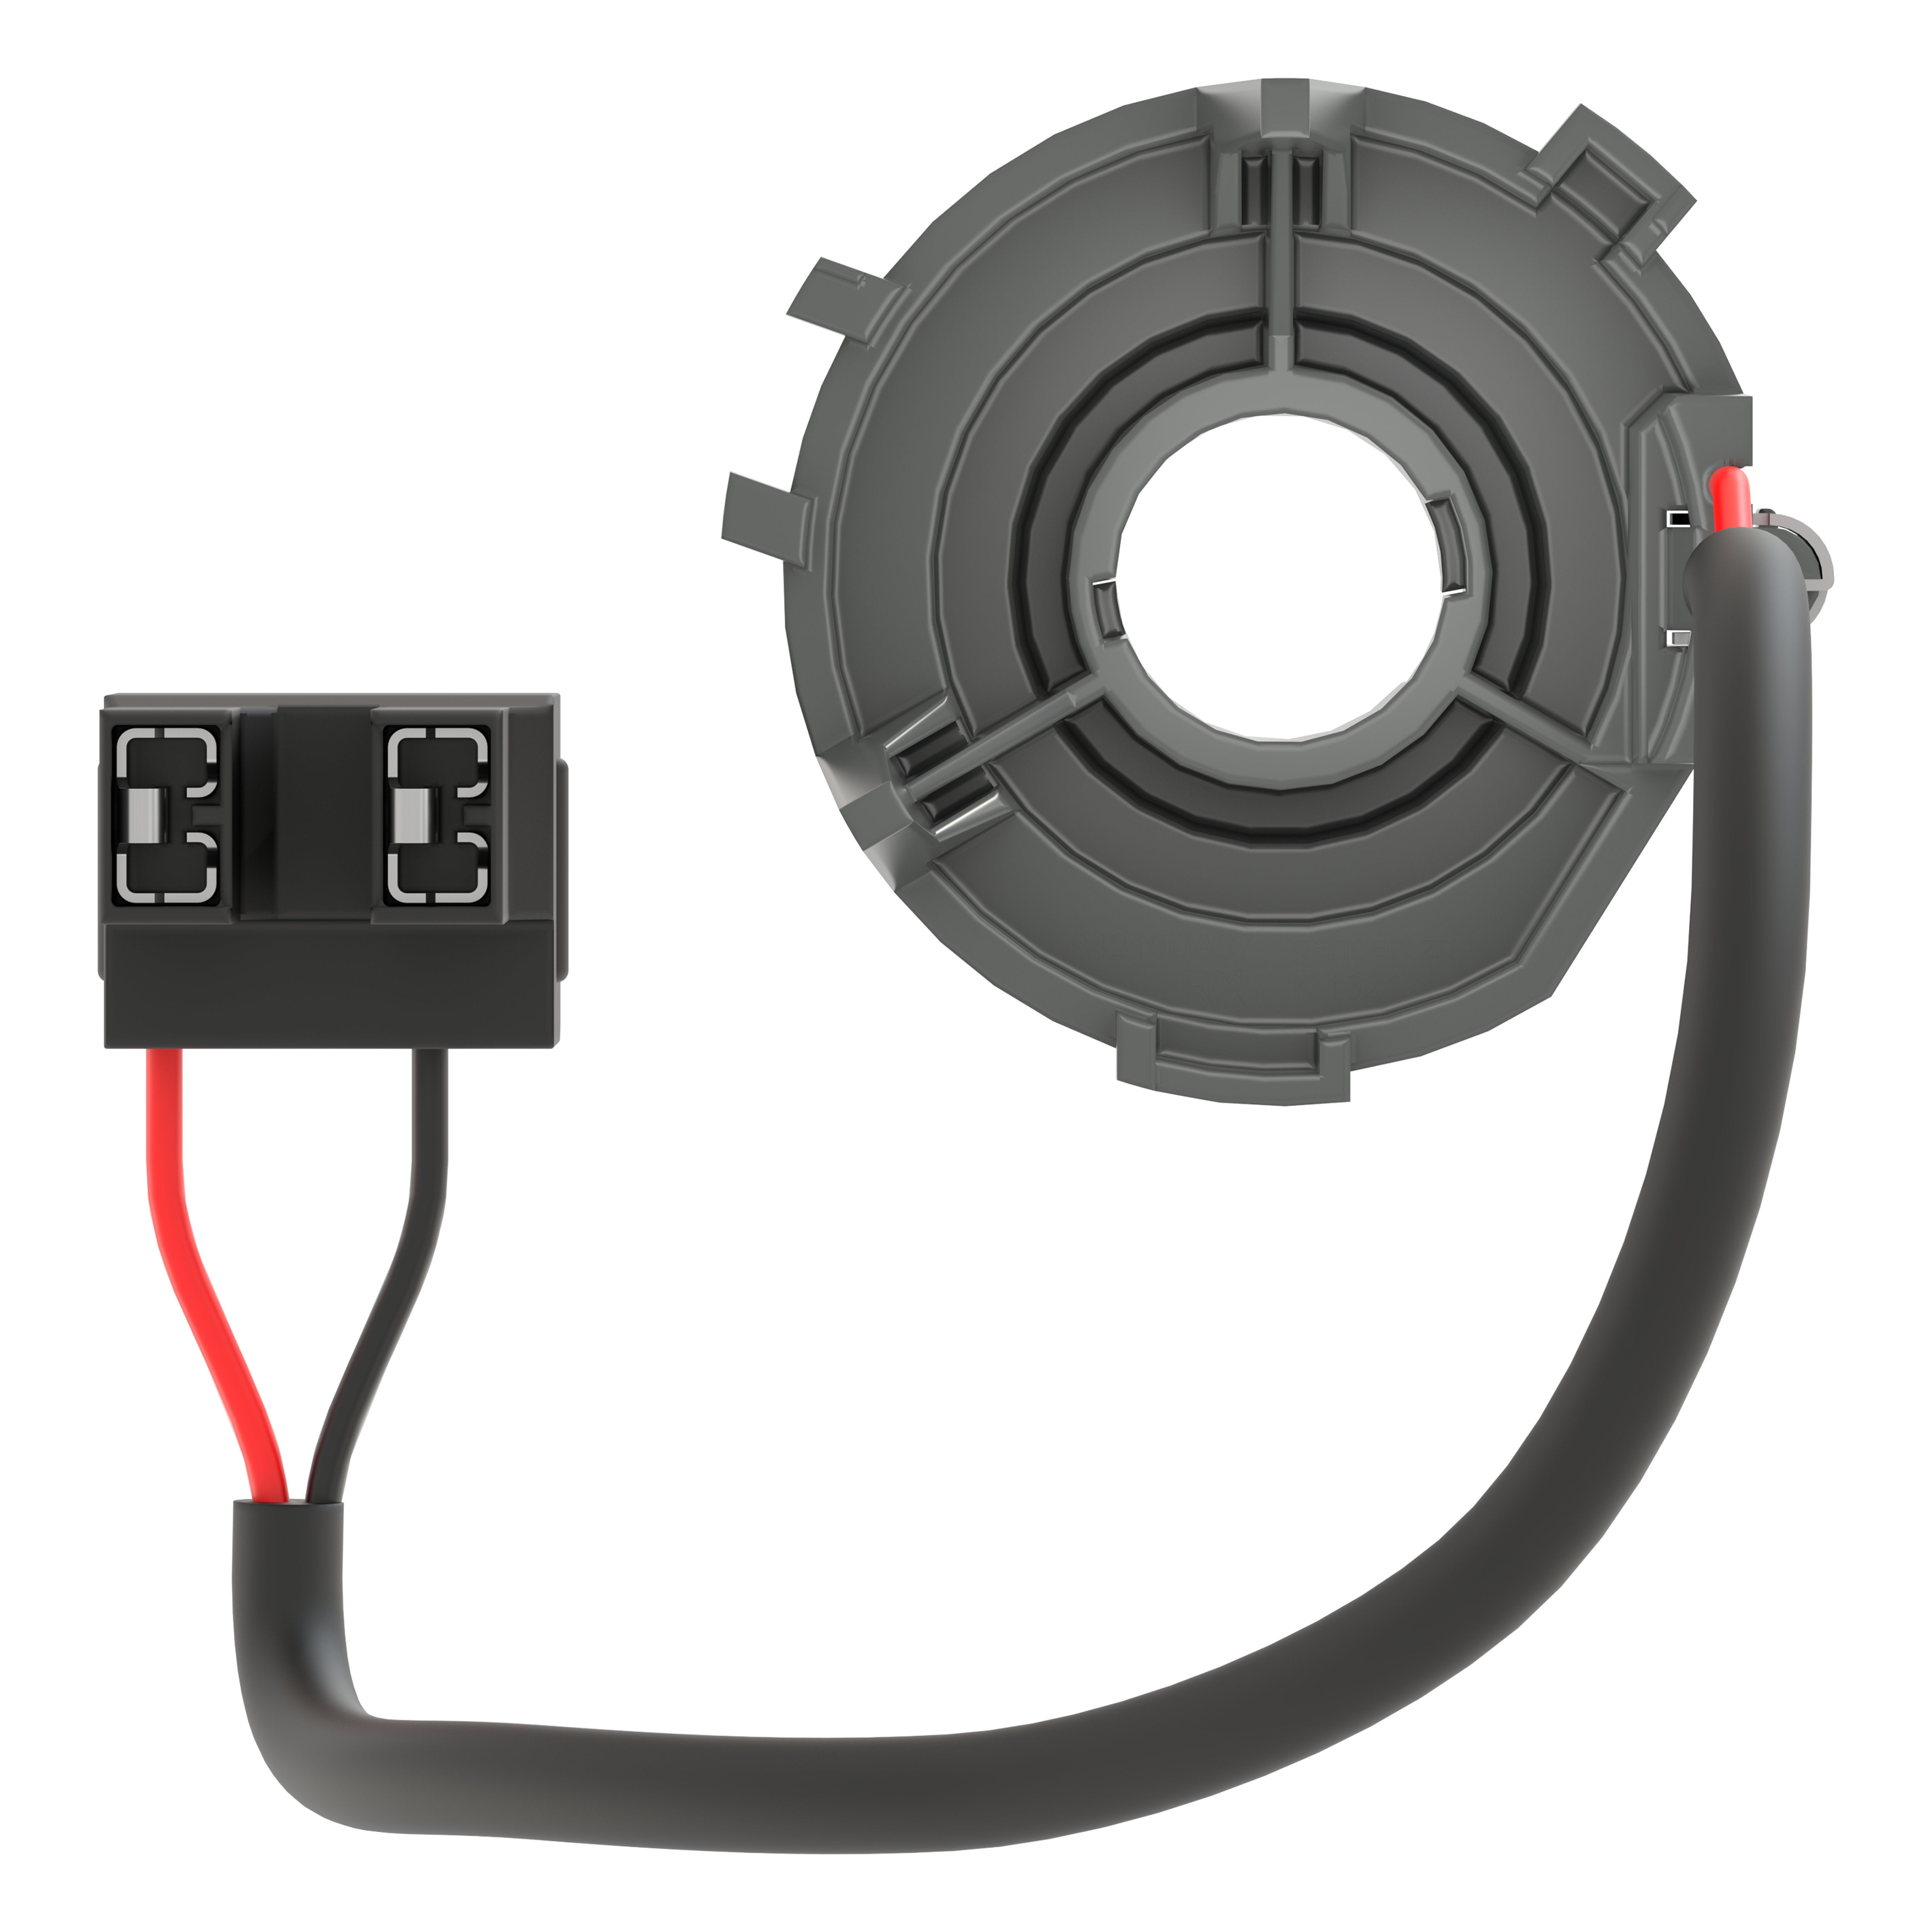 OSRAM LEDriving Adapter 64210DA07 for Night Breaker H7-LED. Lamp Holder :  : Automotive